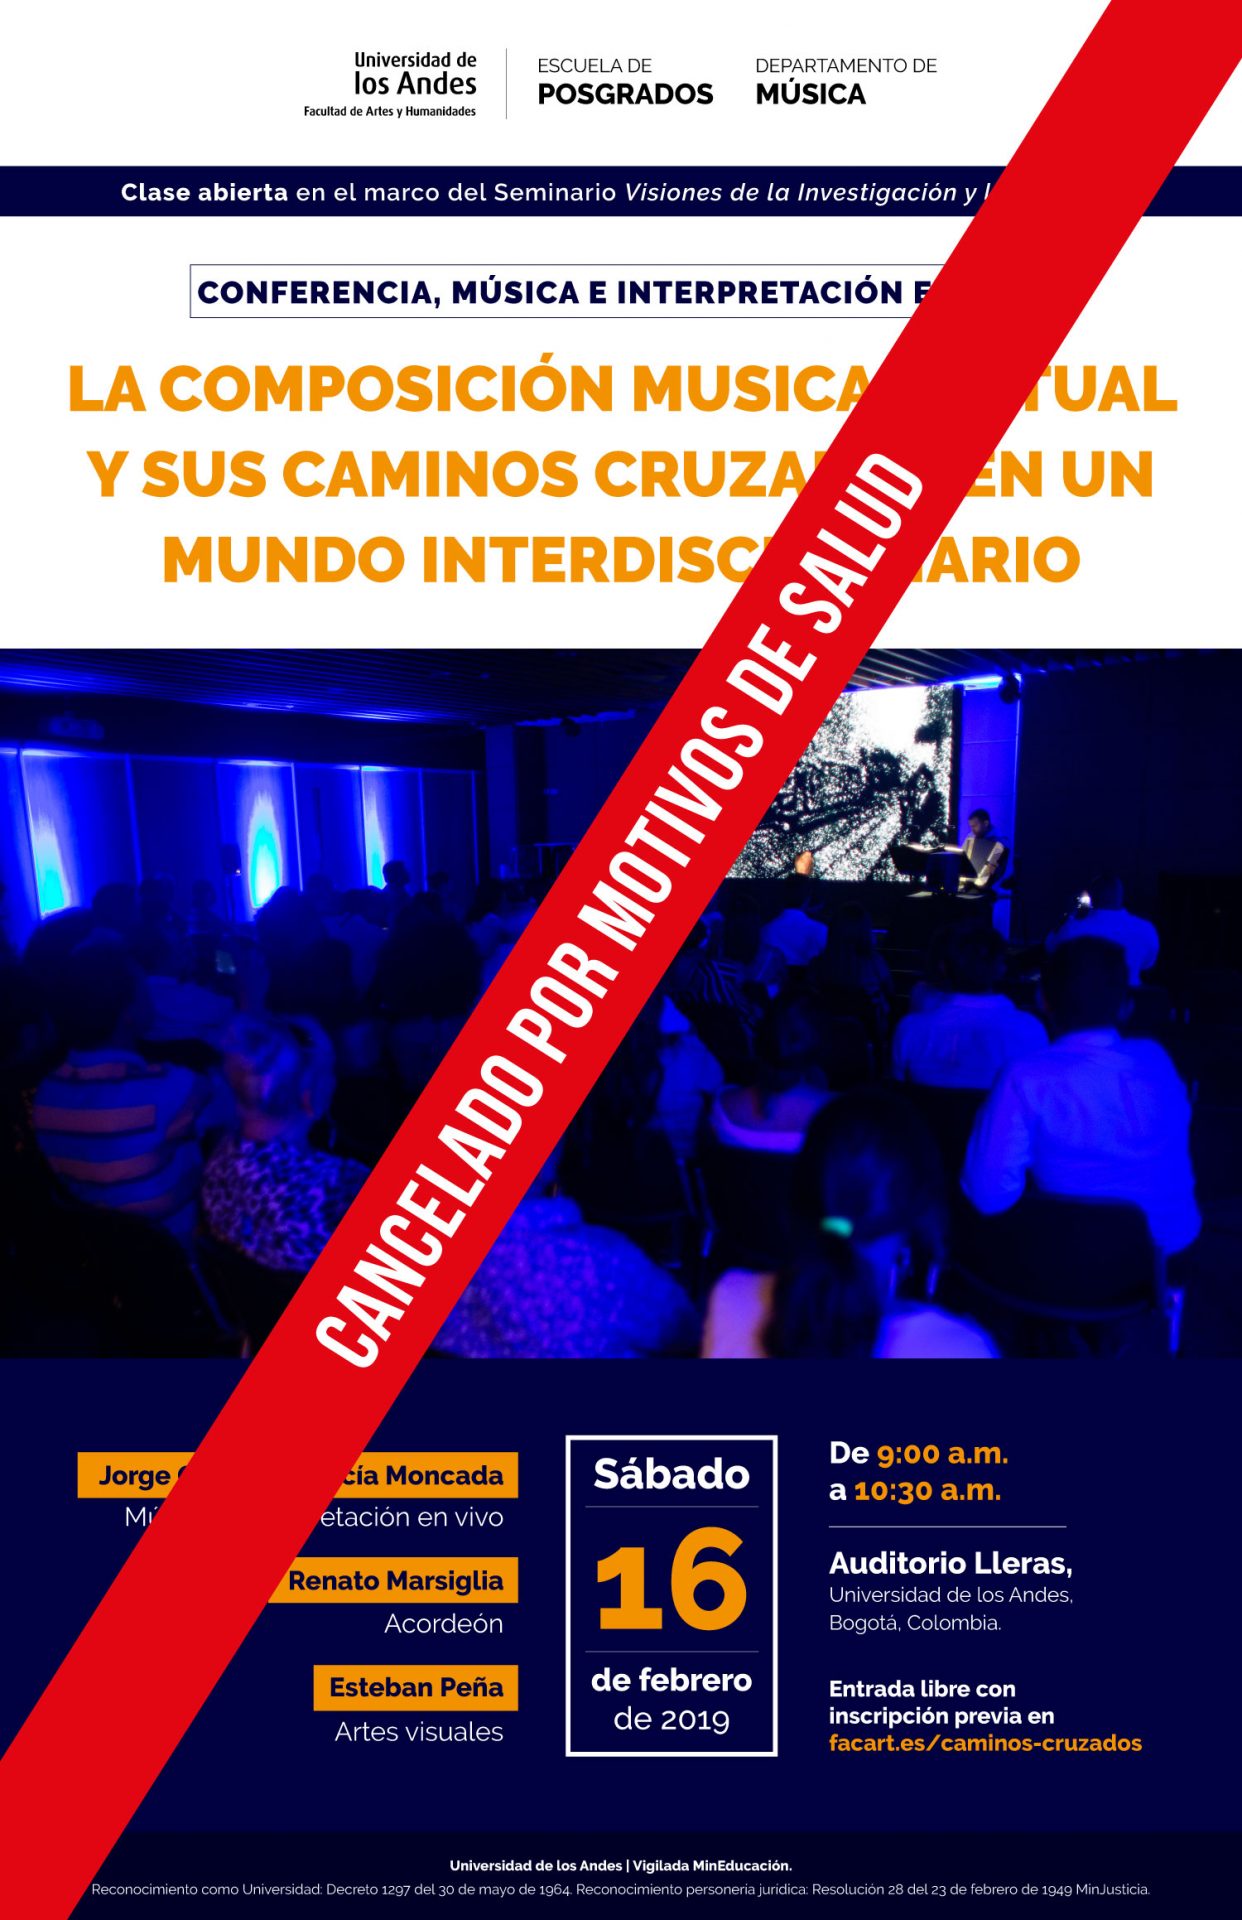 Sábado 16 de febrero del 2019, de 9:00 a.m. a 10:30 a.m., en el Auditorio Lleras, Universidad de los Andes.